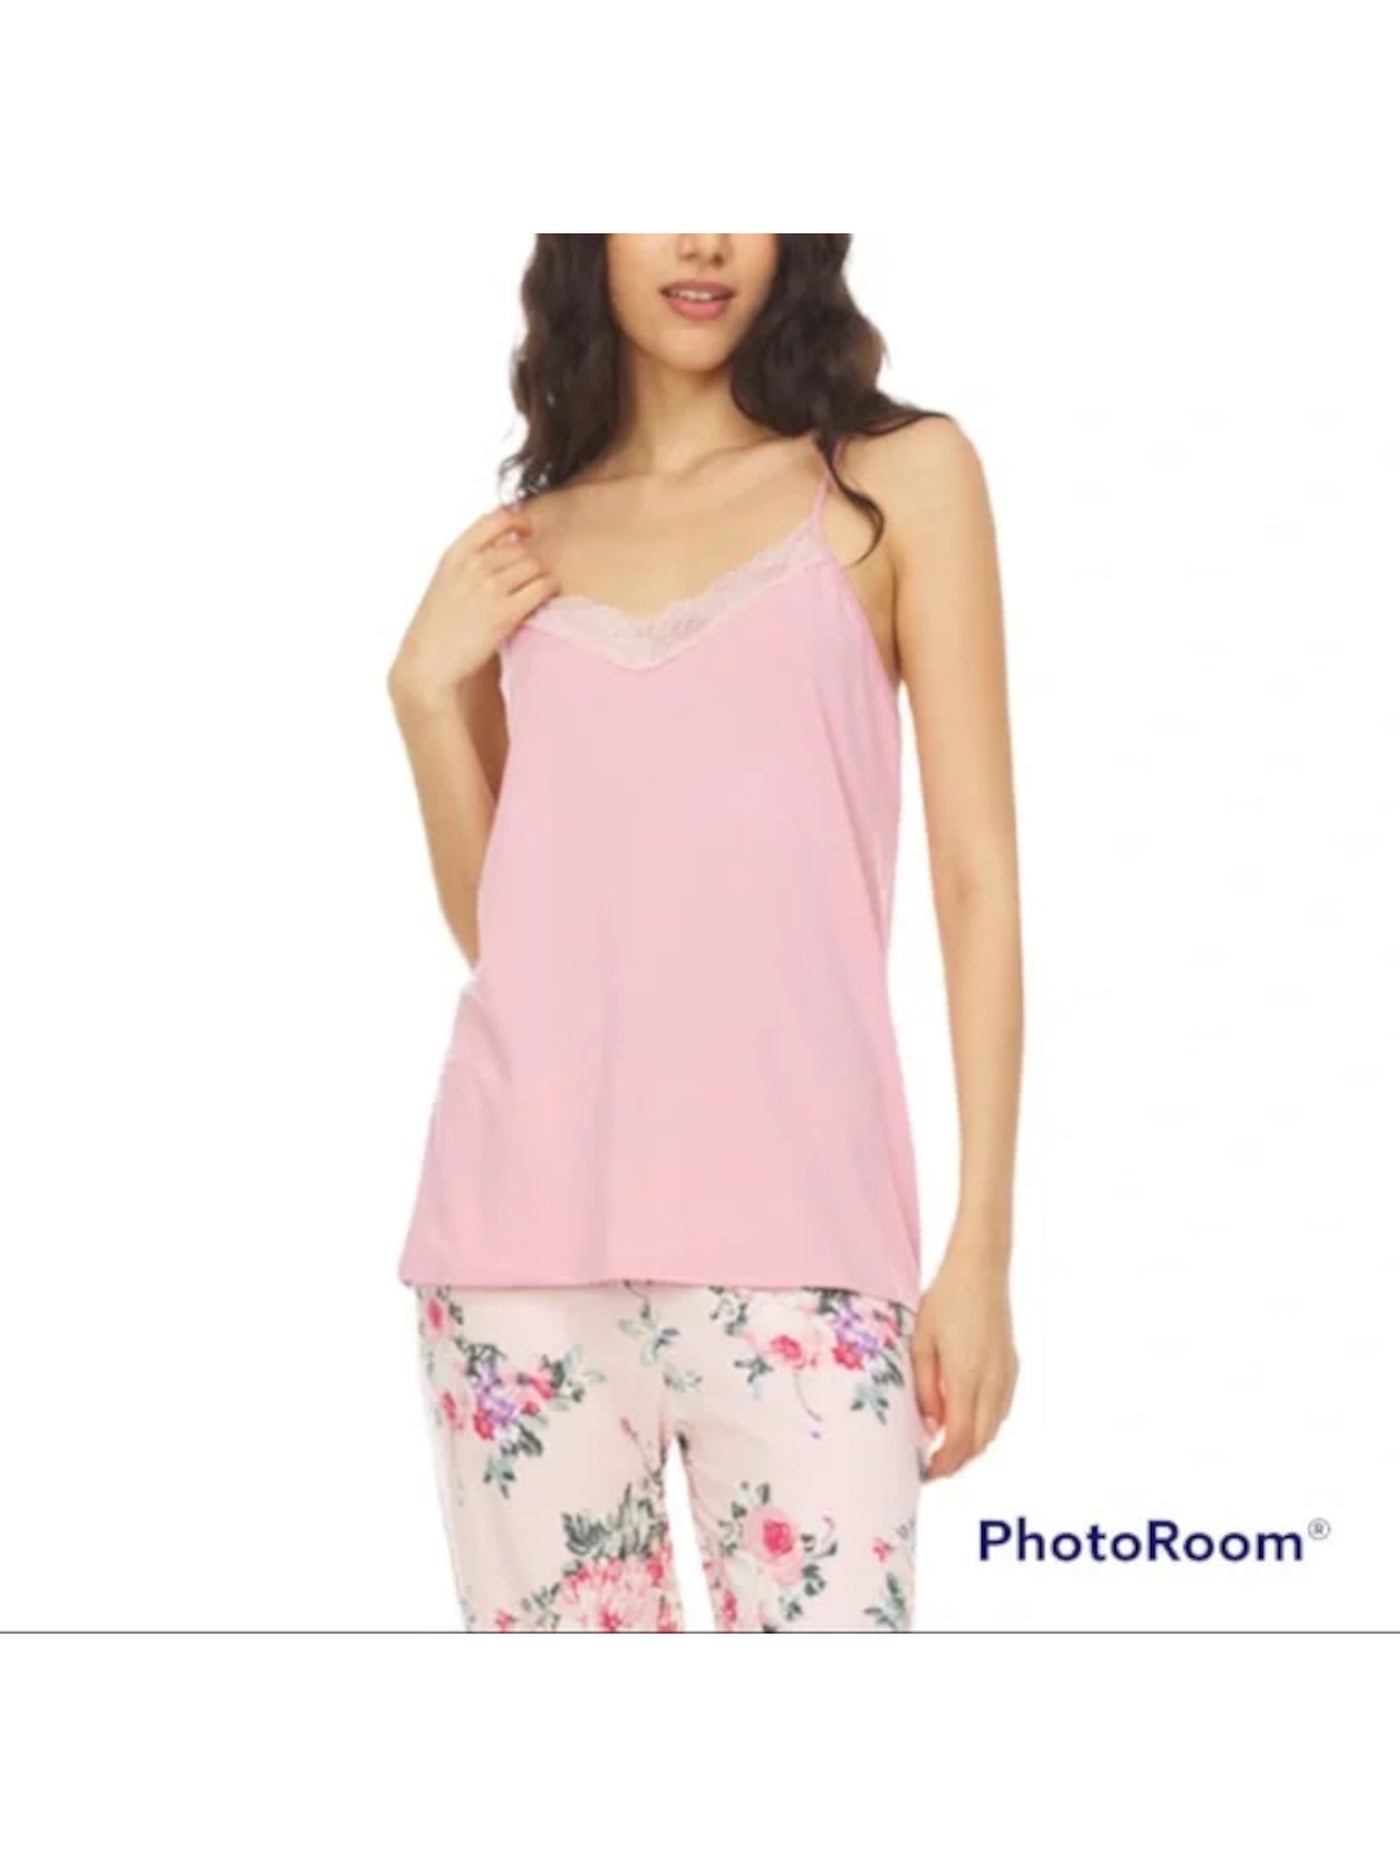 FLORA NIKROOZ Intimates Pink Tank Sleep Shirt Pajama Top L